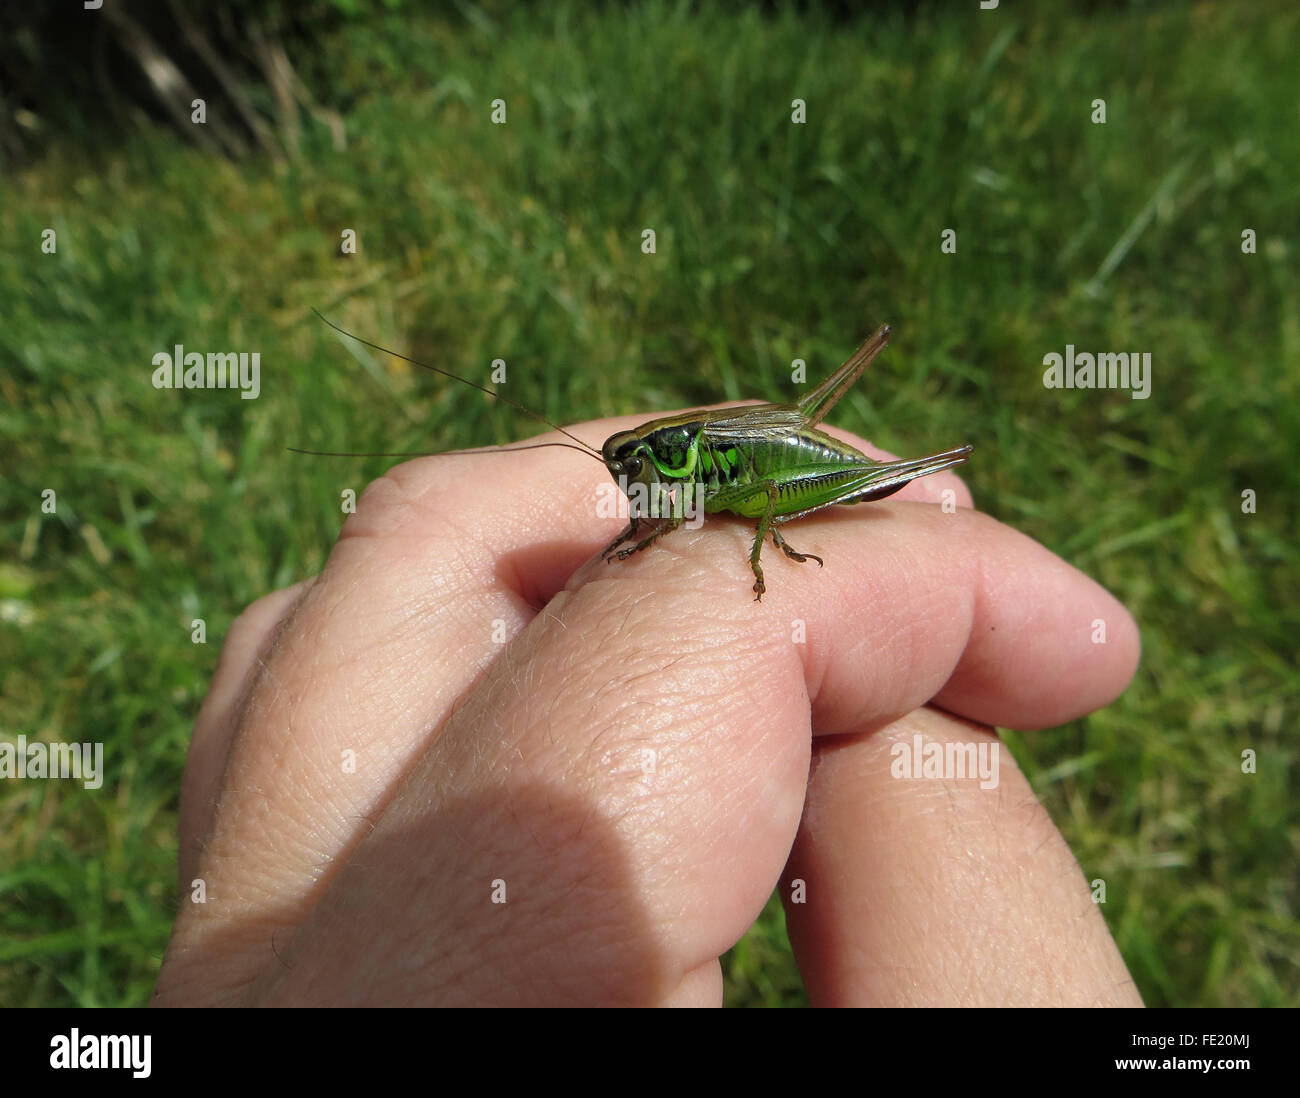 Formulaire vert de Roesel's bush-cricket (Metrioptera roeselii), femme, sur la main du photographe, avec de l'herbe à l'arrière-plan Banque D'Images